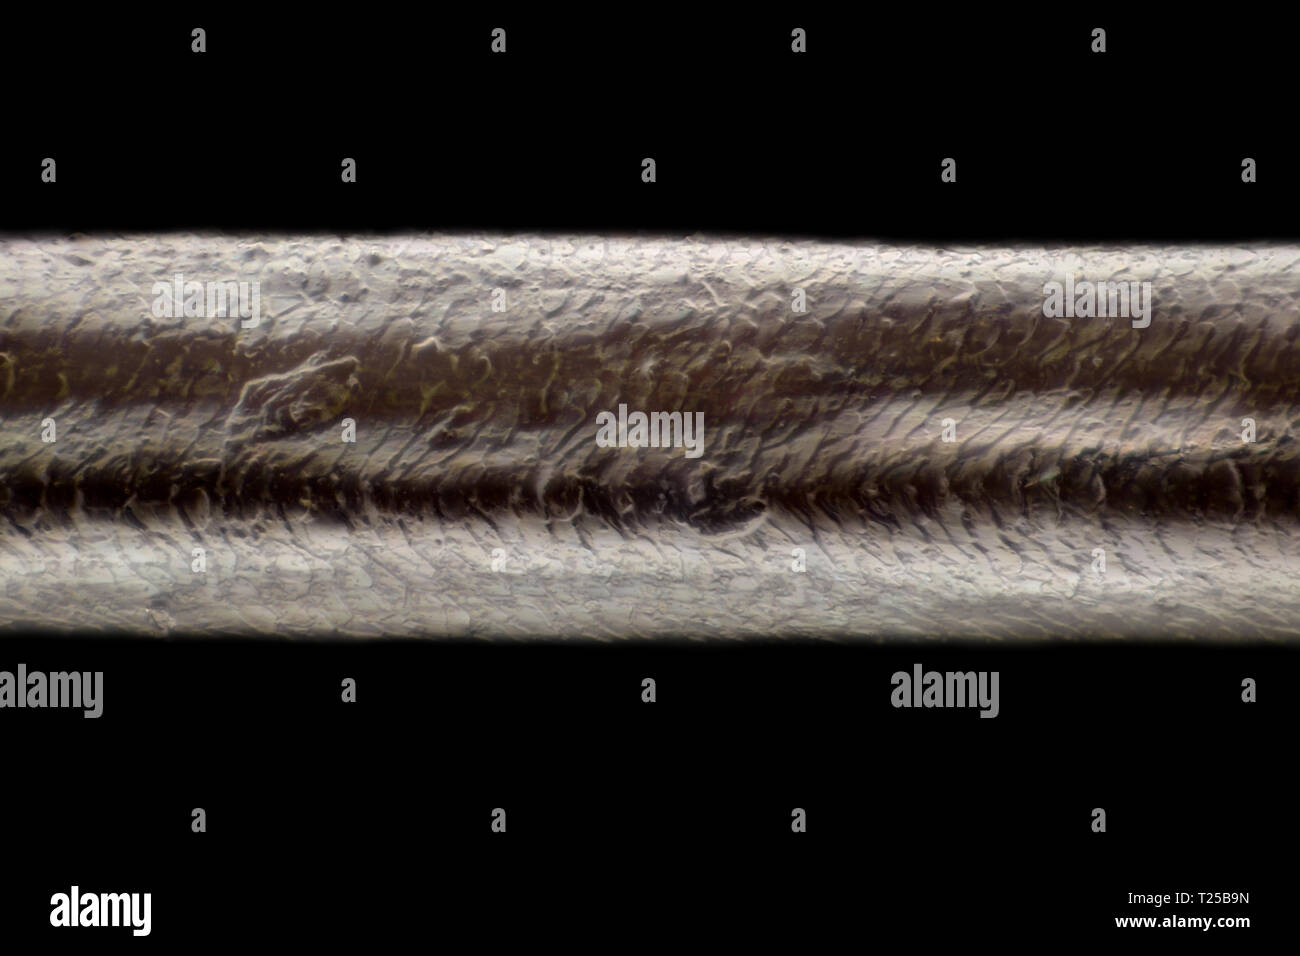 Extreme Vergrößerung - menschliches Haar am Mikroskop, 100-facher  Vergrößerung Stockfotografie - Alamy